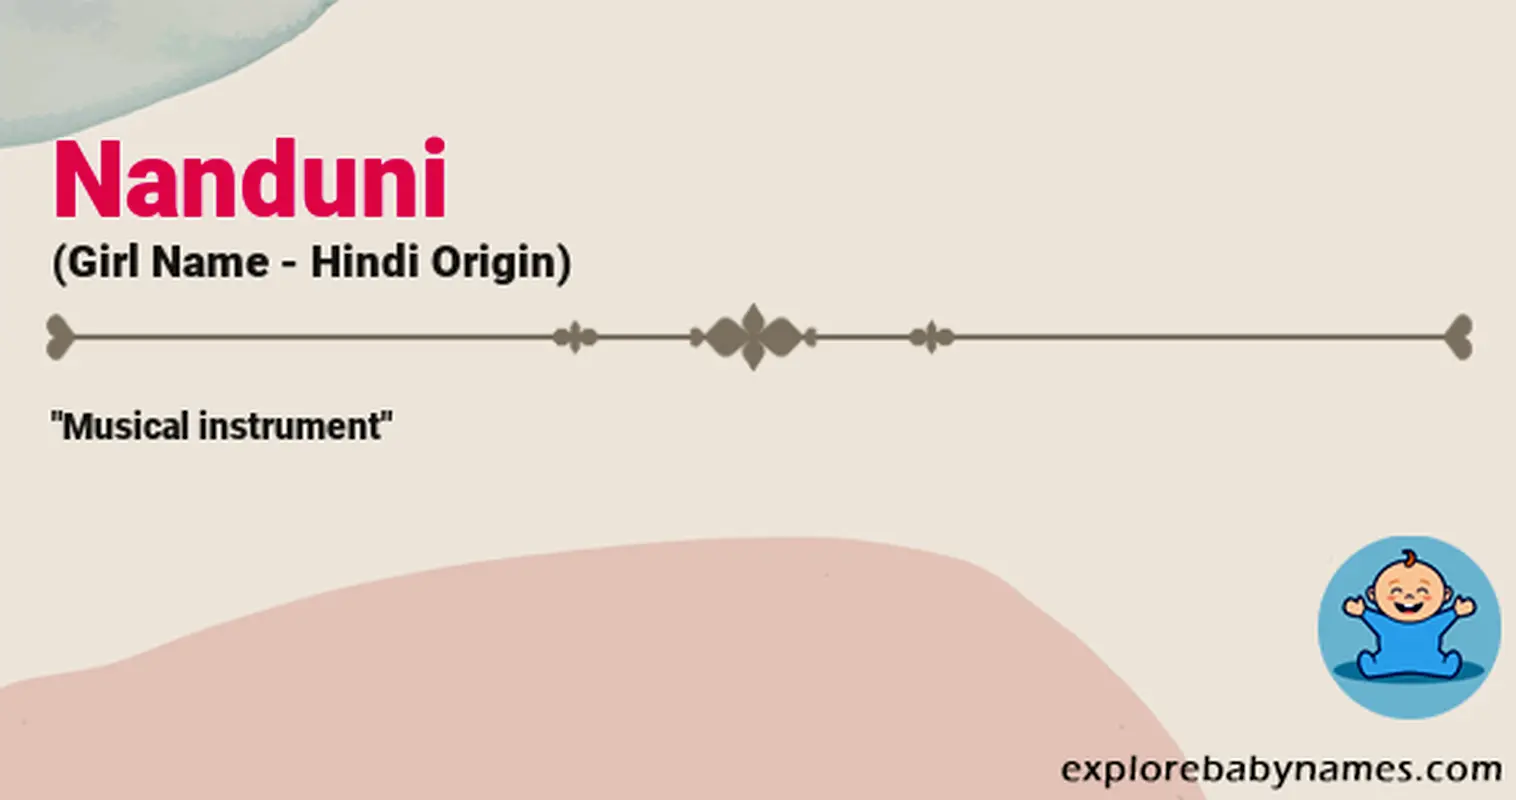 Meaning of Nanduni